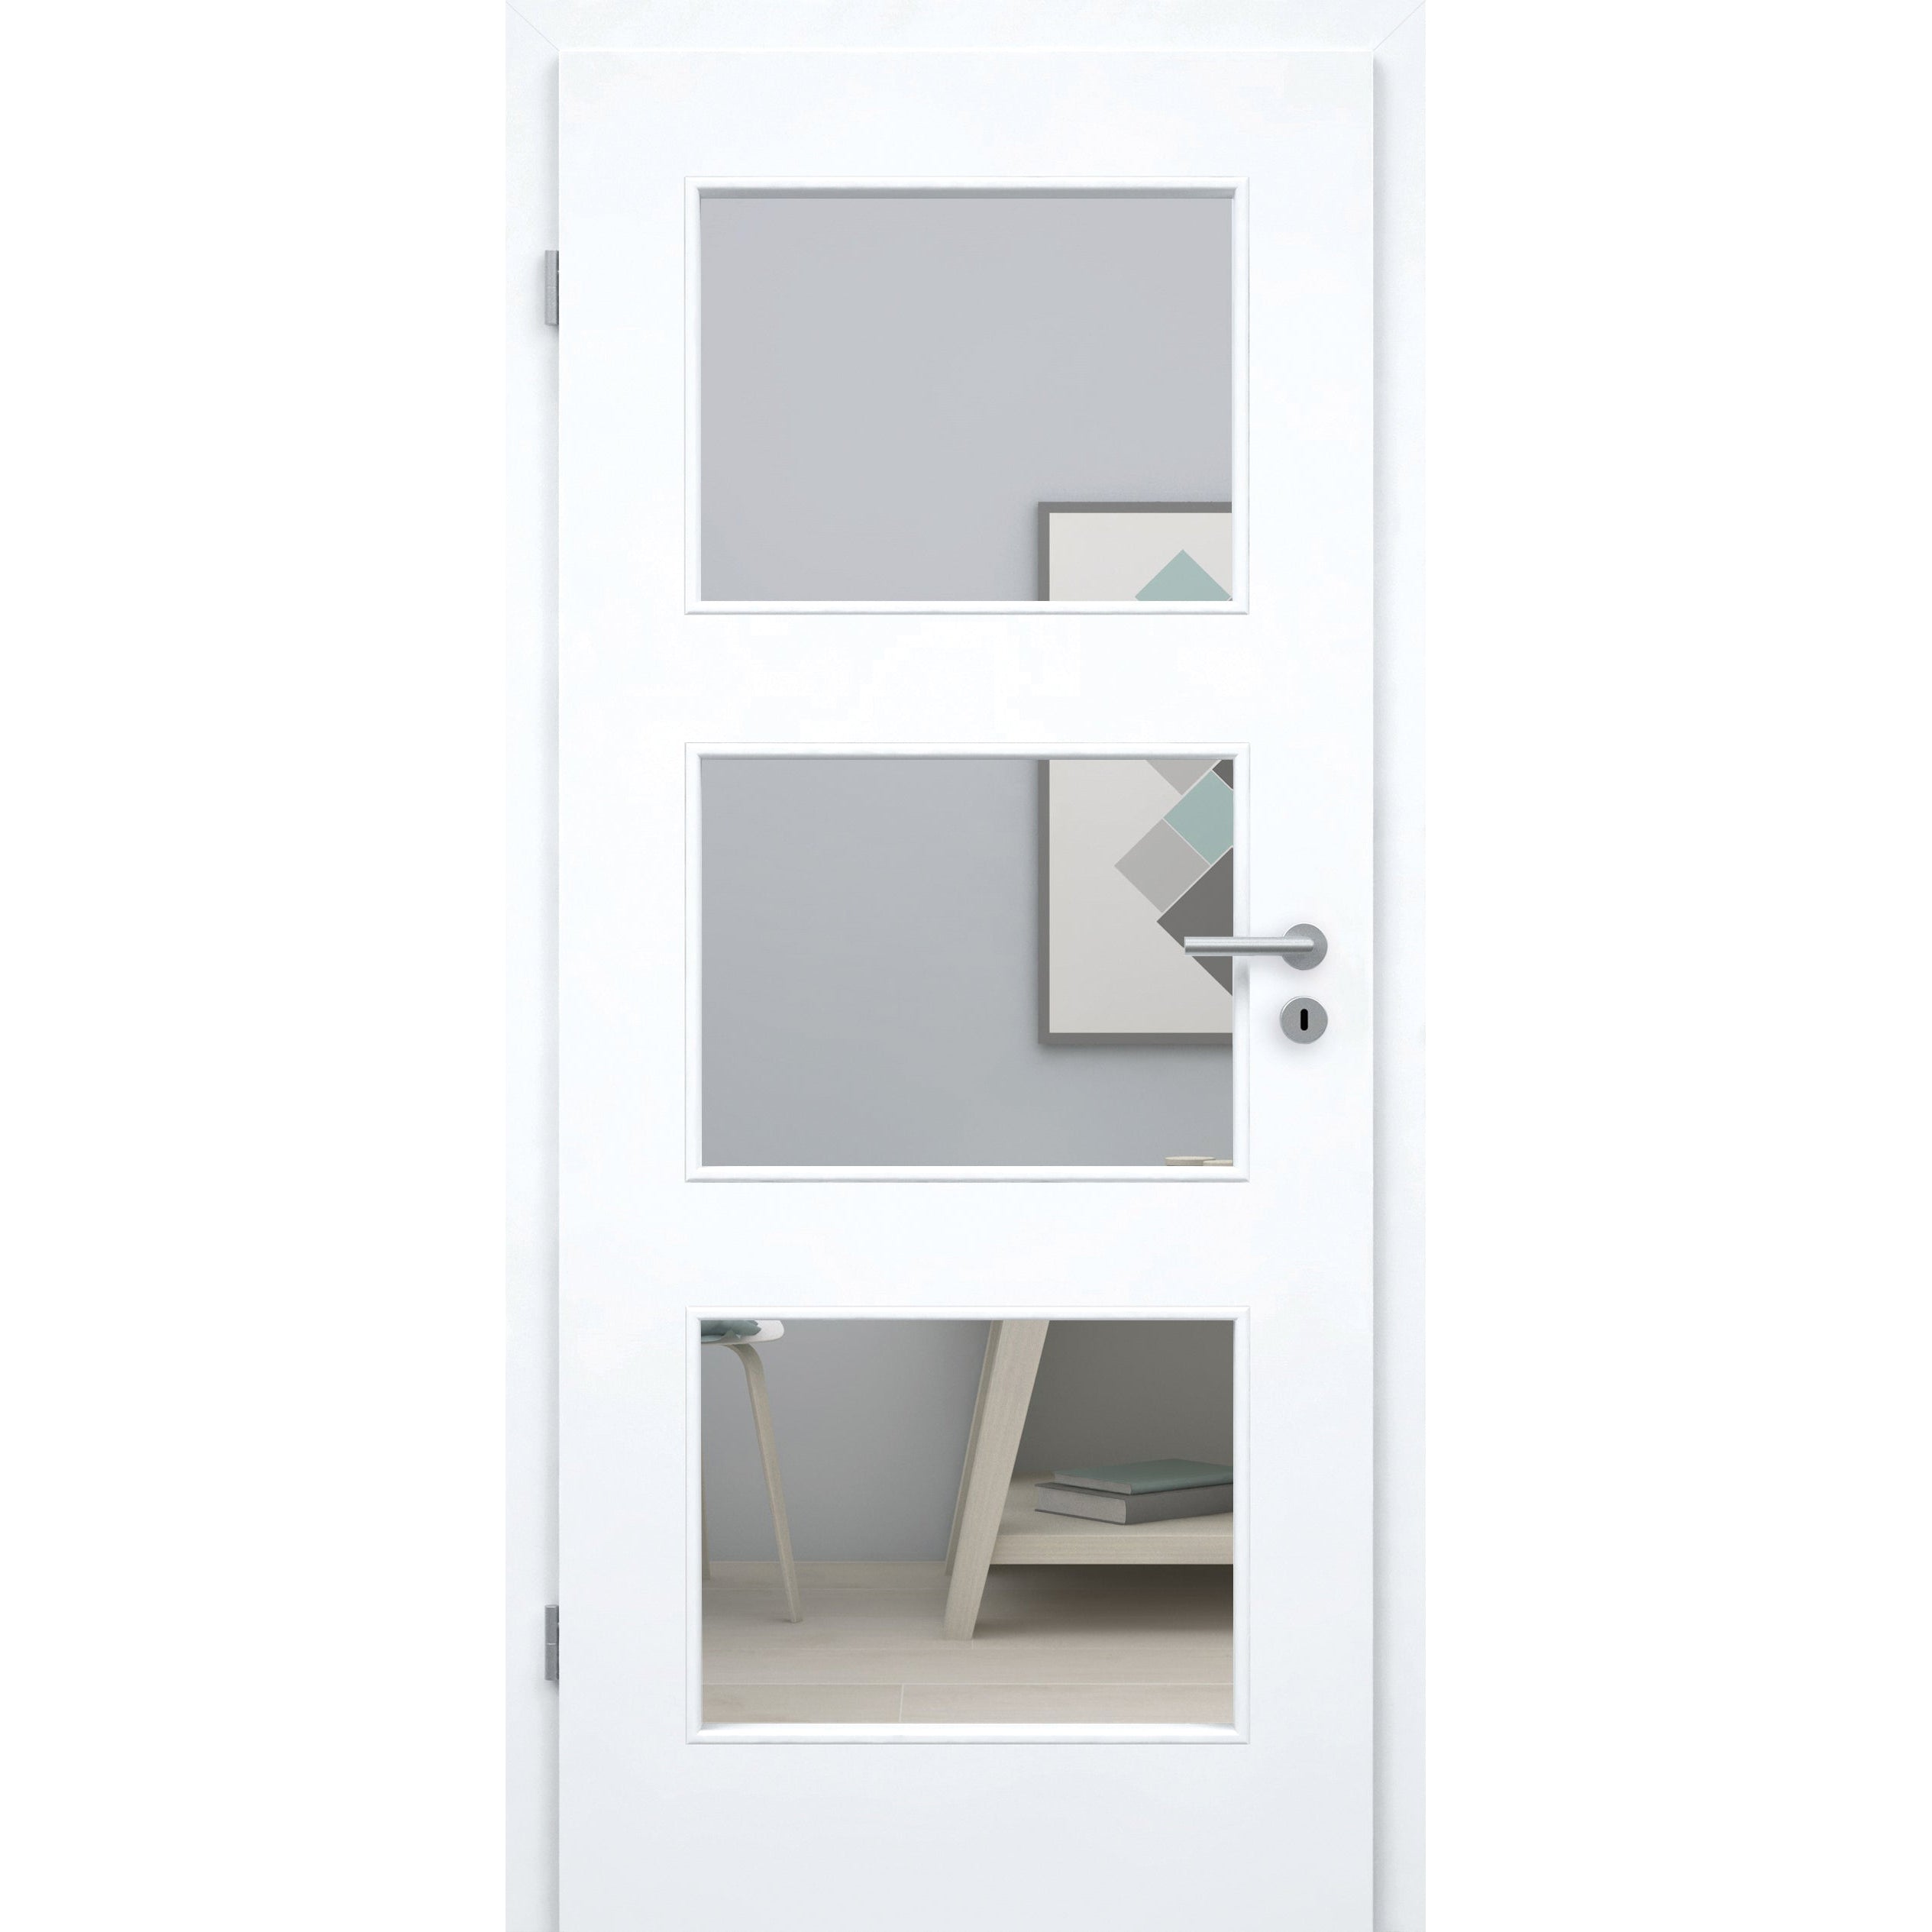 Zimmertür brillant-weiß Stiltür mit 3 Kassetten und Lichtausschnitt Designkante - Modell Stiltür M33LA3